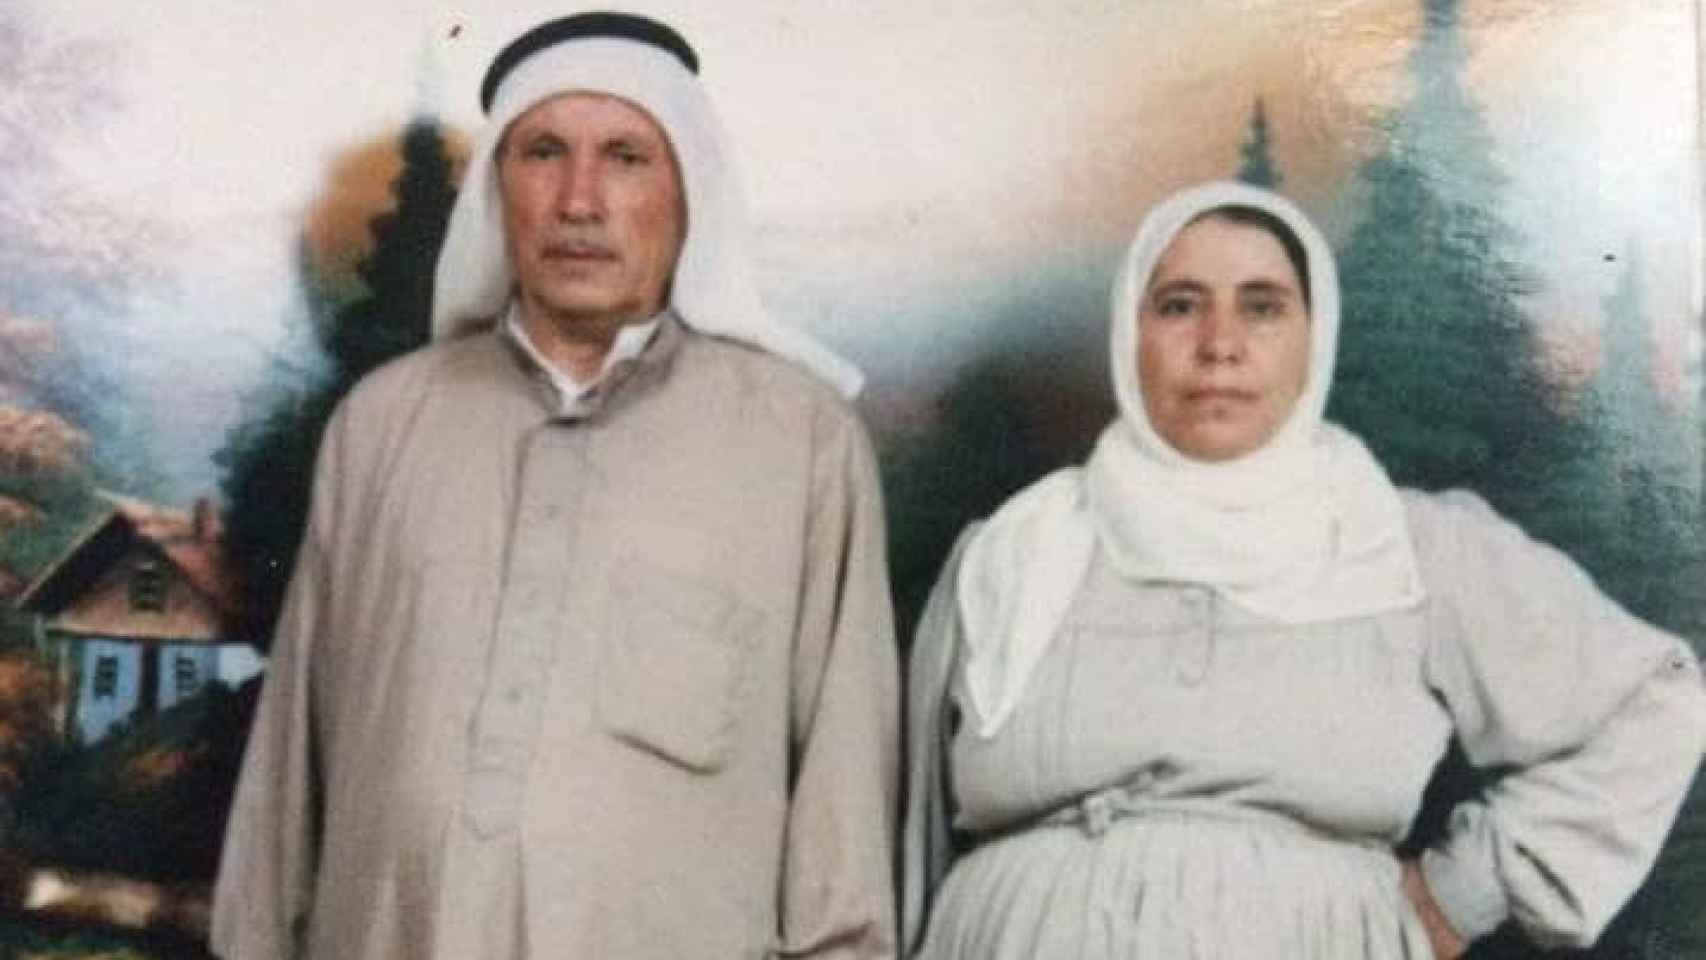 Los padres de Nujeen, ahora refugiados en Turquía, en una imagen de archivo.